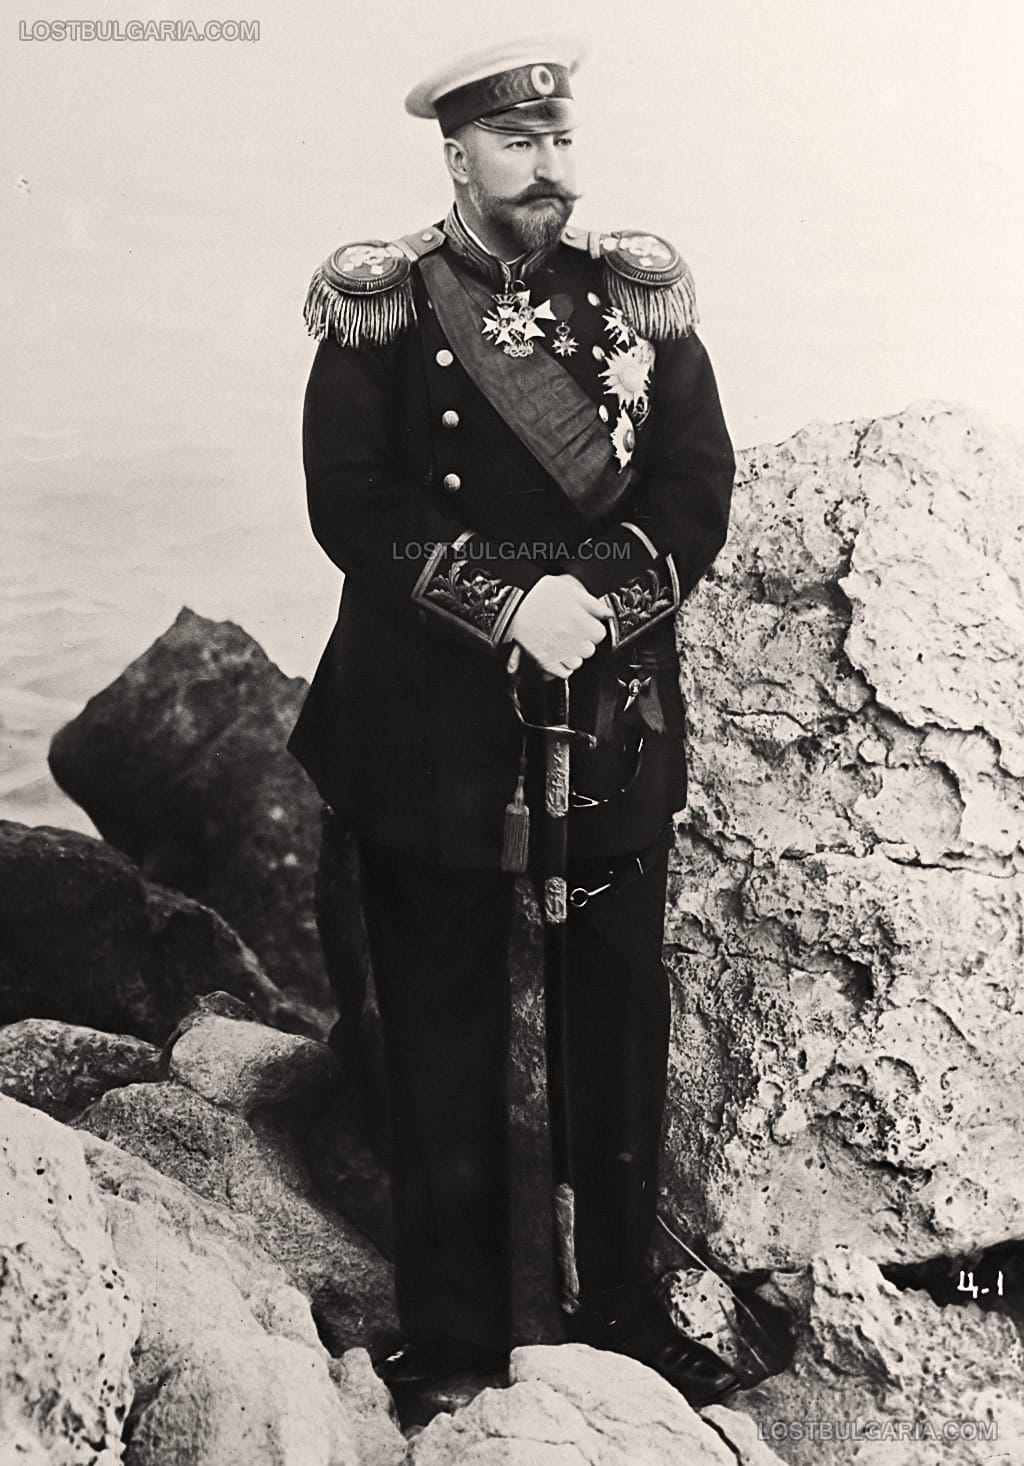 Портрет на Княз Фердинанд в униформа на капитан I-ви ранг, заснет на скалите при Евксиноград, вероятно около 1906-7 г.